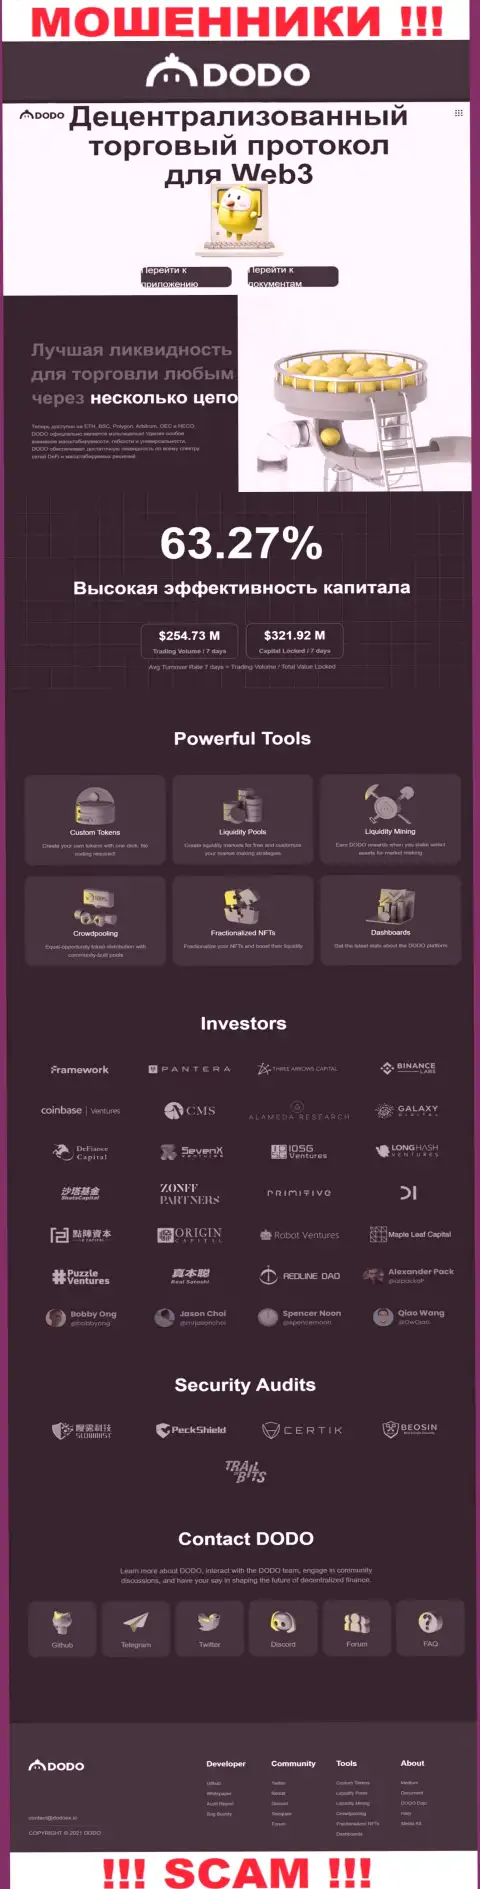 Скрин официального веб-сервиса DodoEx, заполненного фейковыми гарантиями